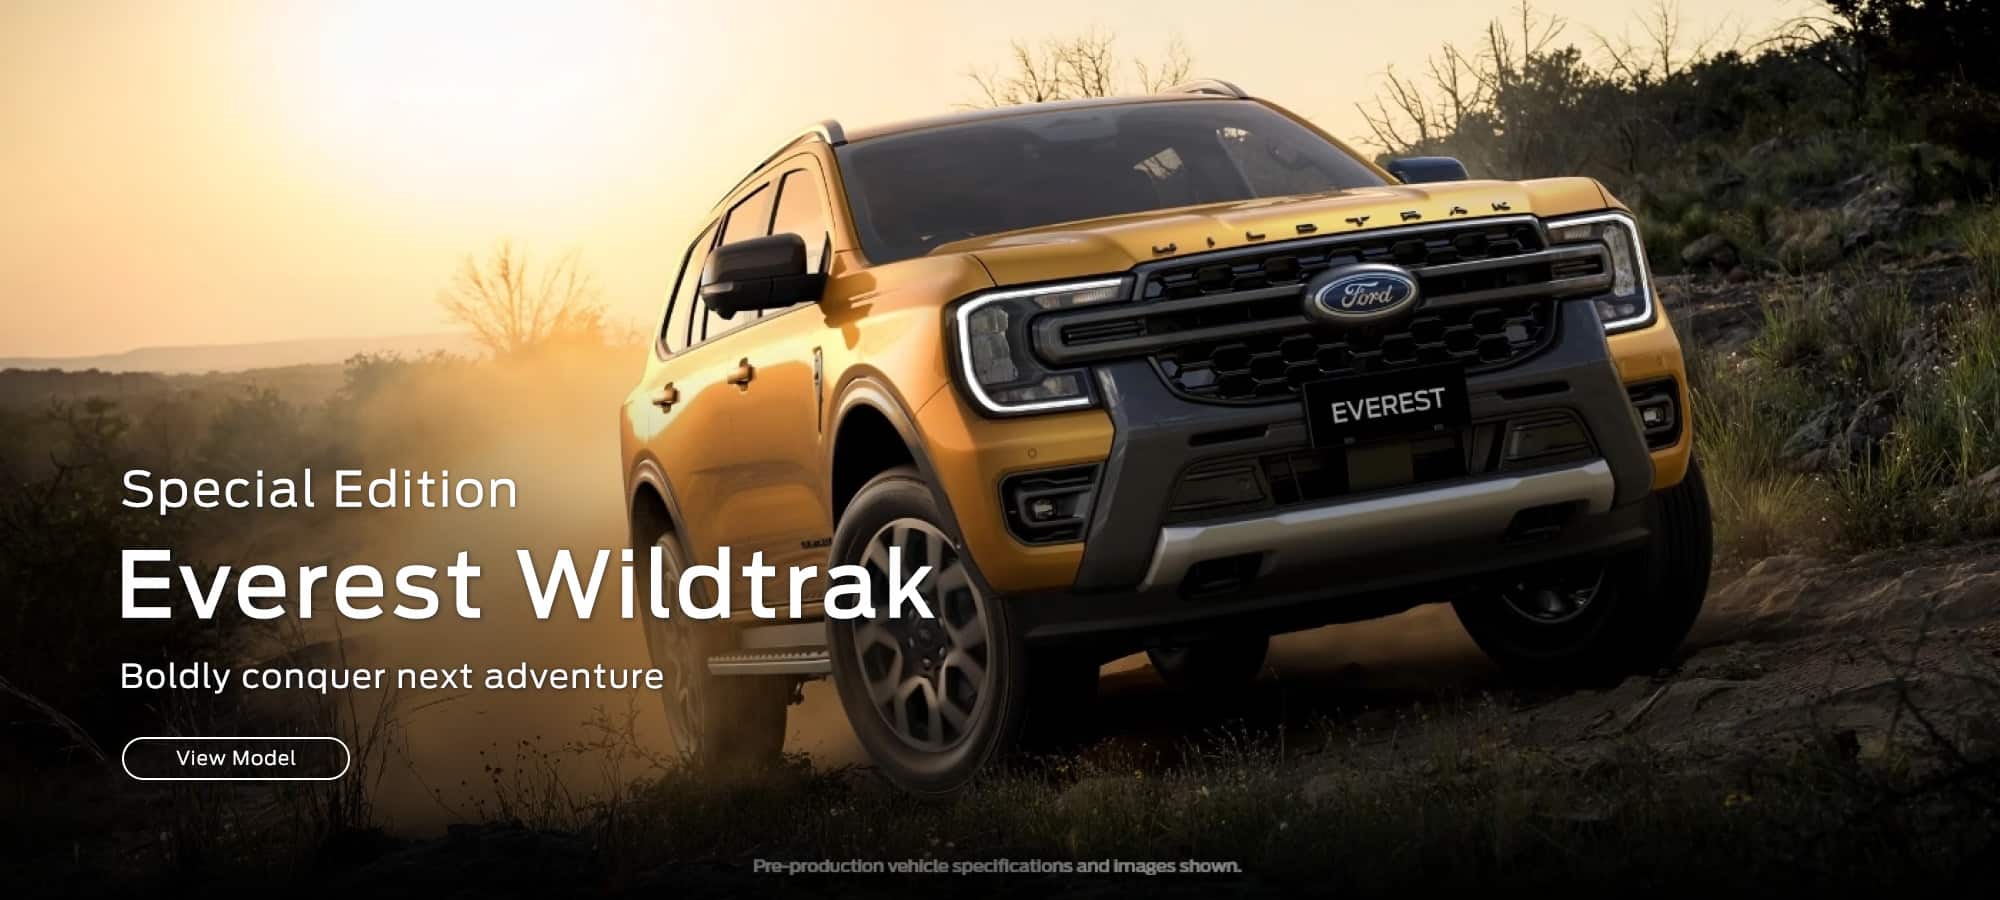 Ford Everest Wildtrak 2000x900